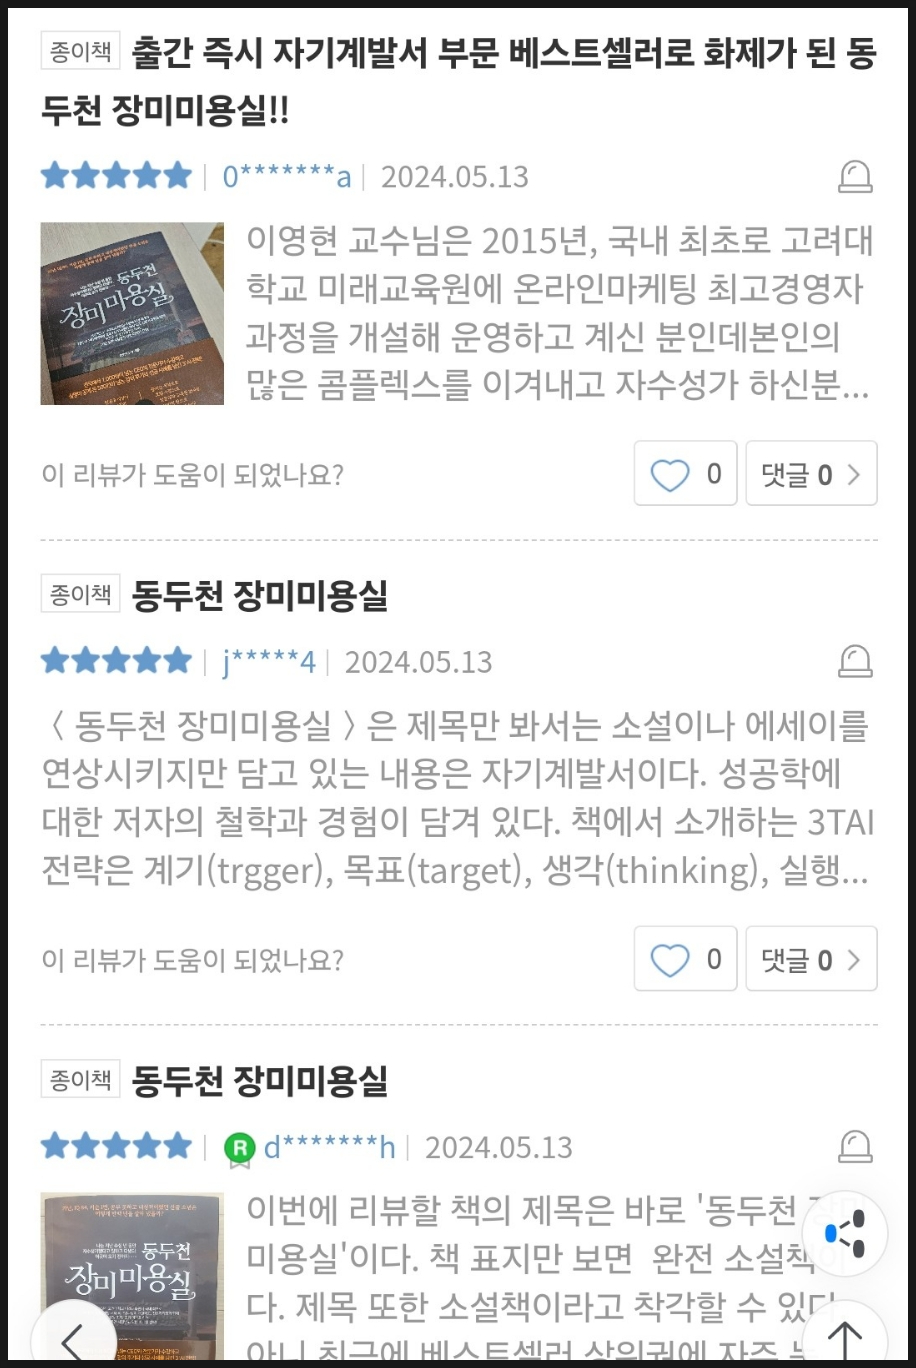 마케팅 책 추천! 온라인마케팅 최고경영자과정 이영현 교수의 동두천 장미미용실